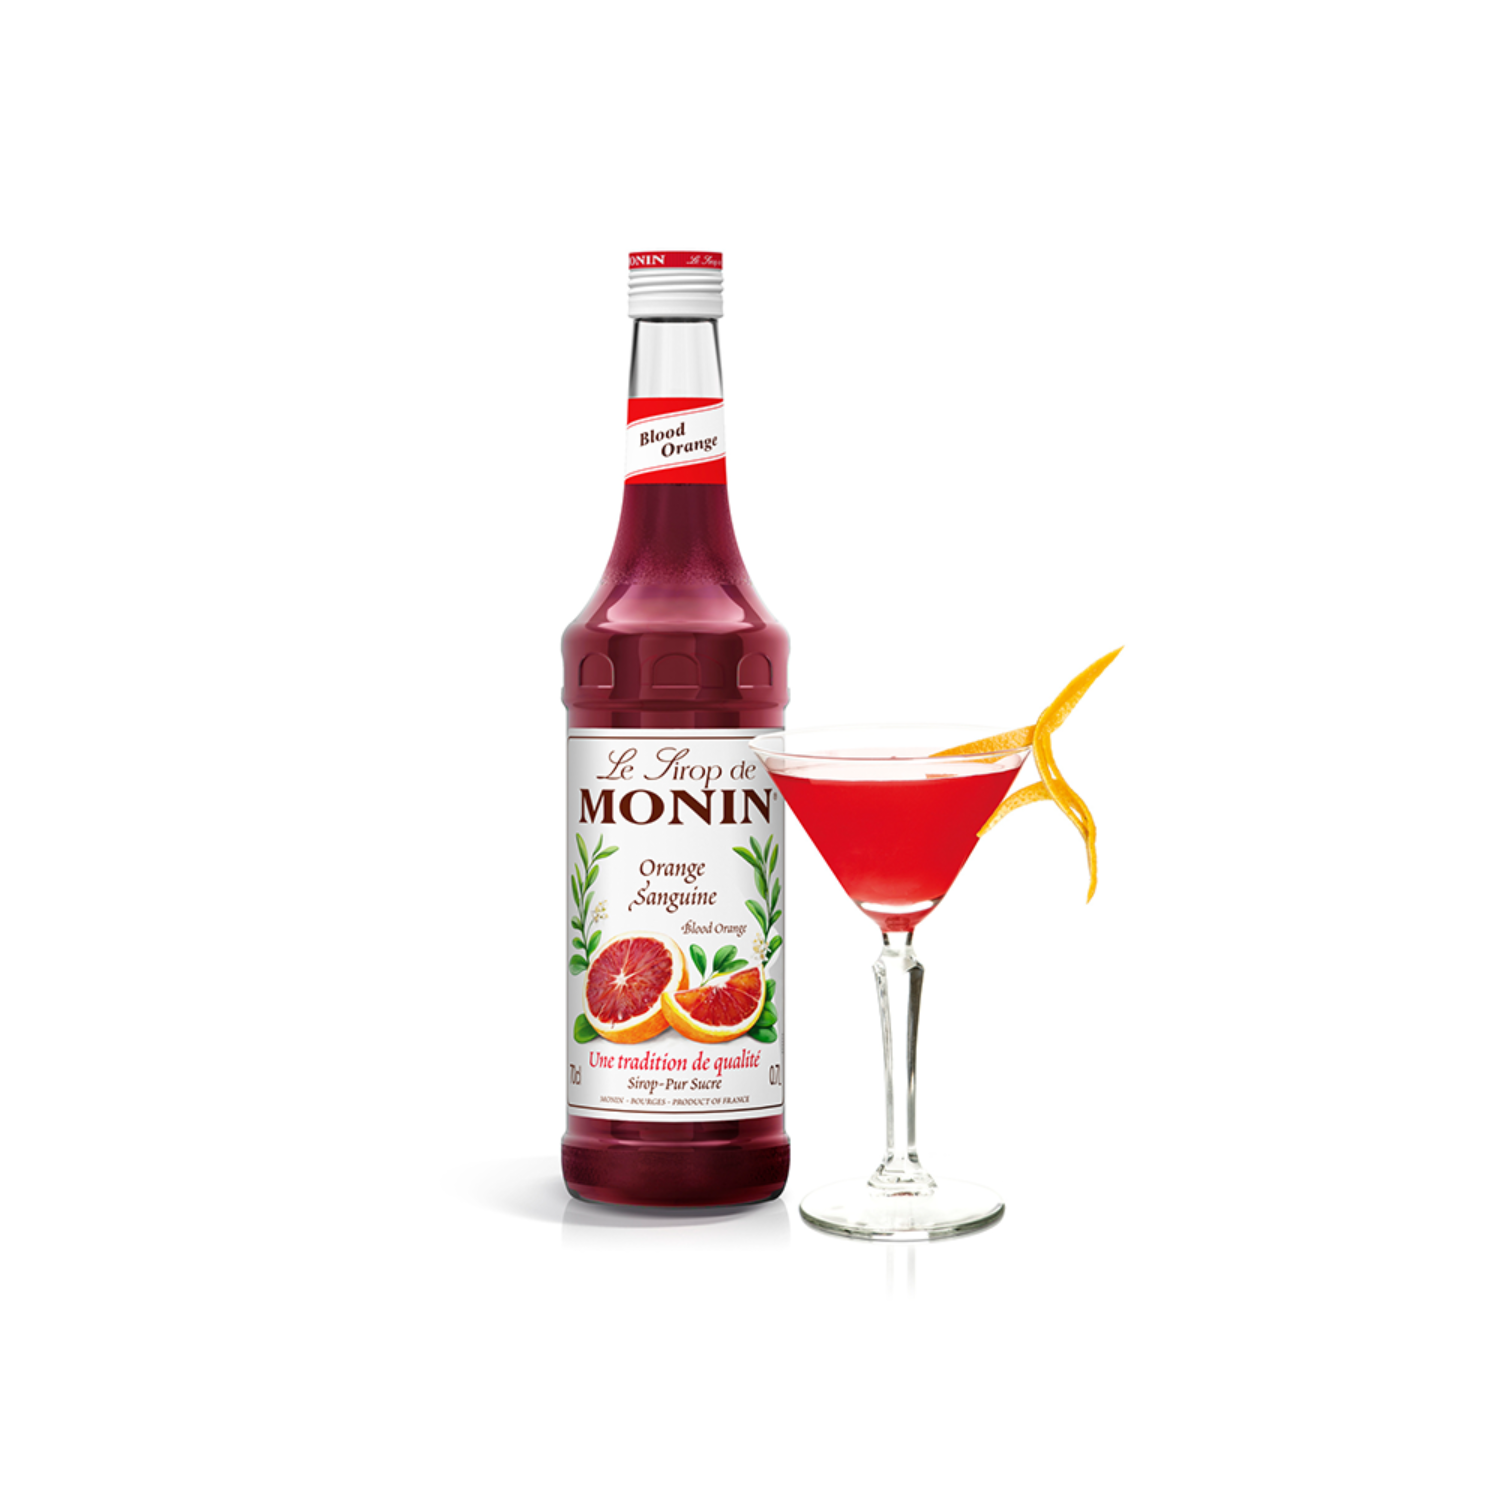 monin-blood-orange-syrup-bottle-and-cocktail